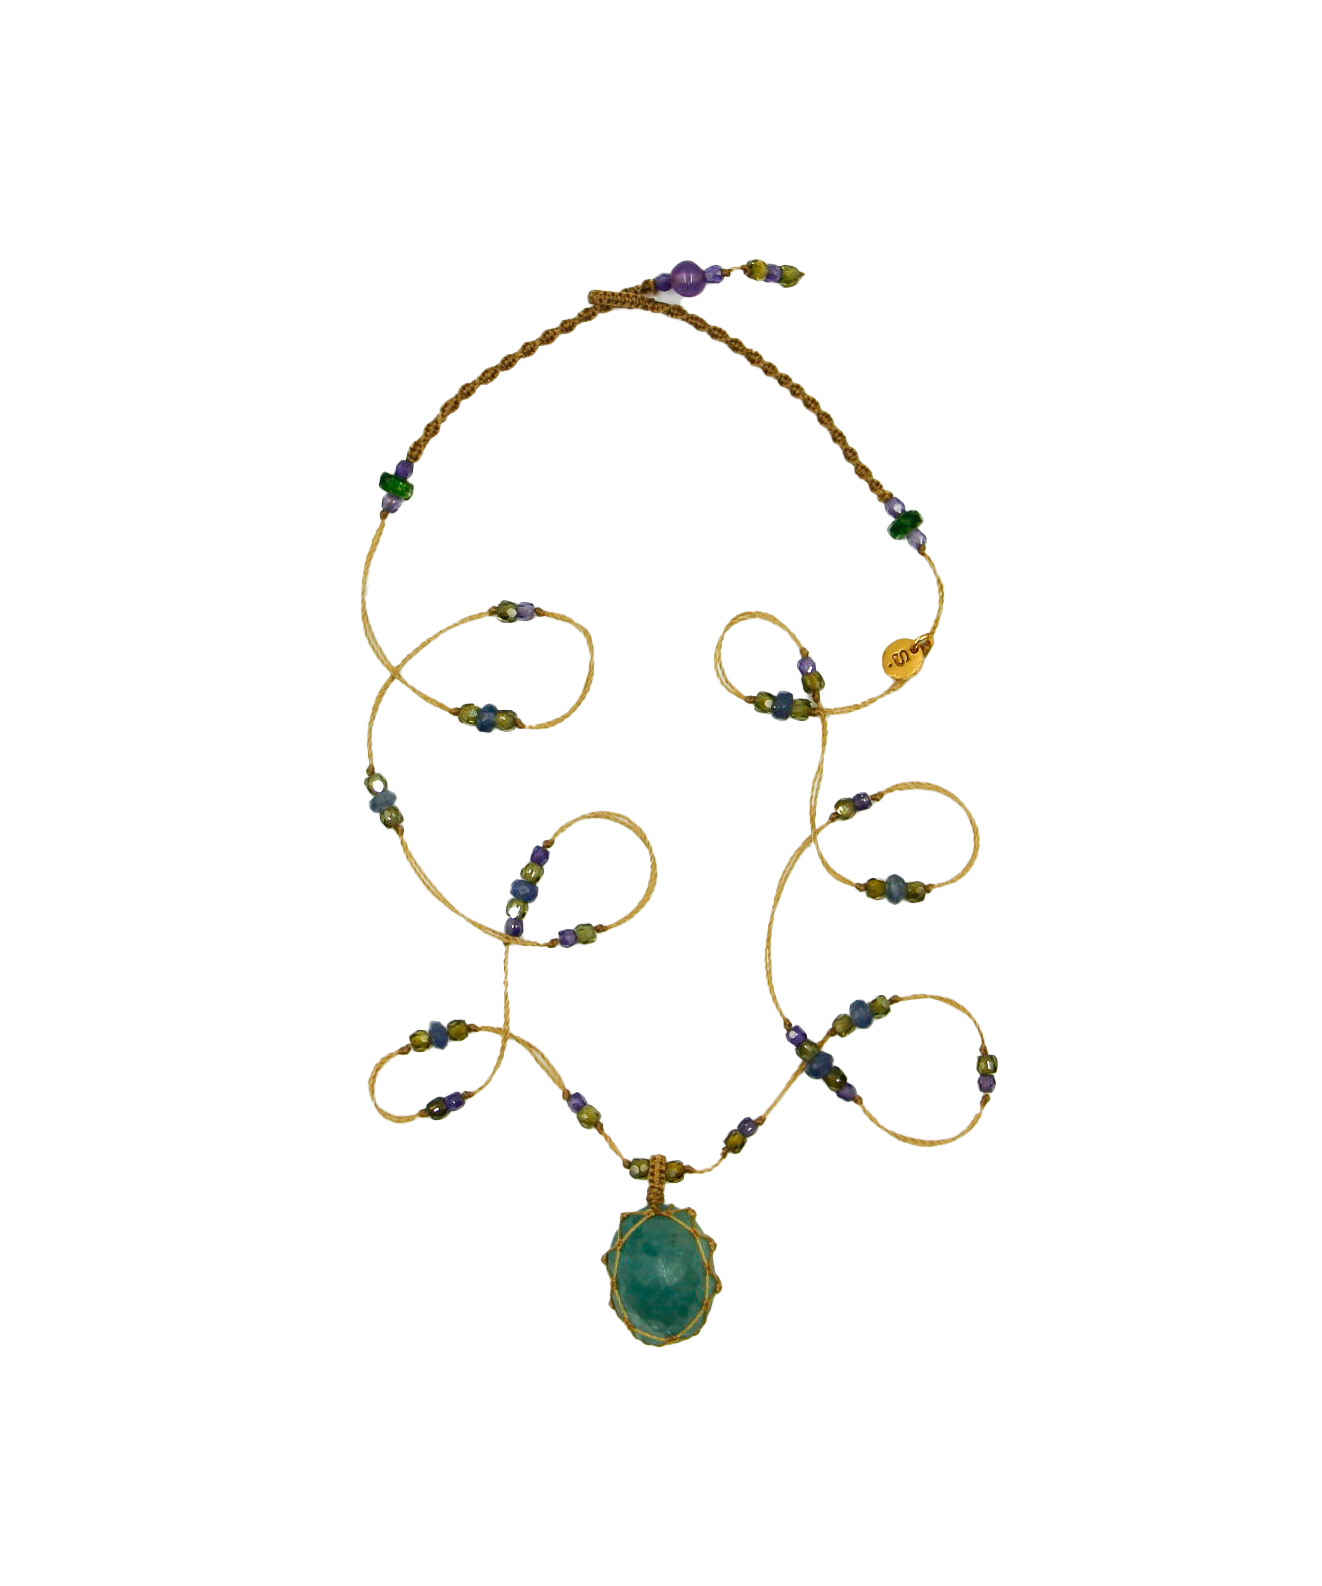 Tibetan Short Necklace - Grandidierite - Mix Sapphire - Beige Thread